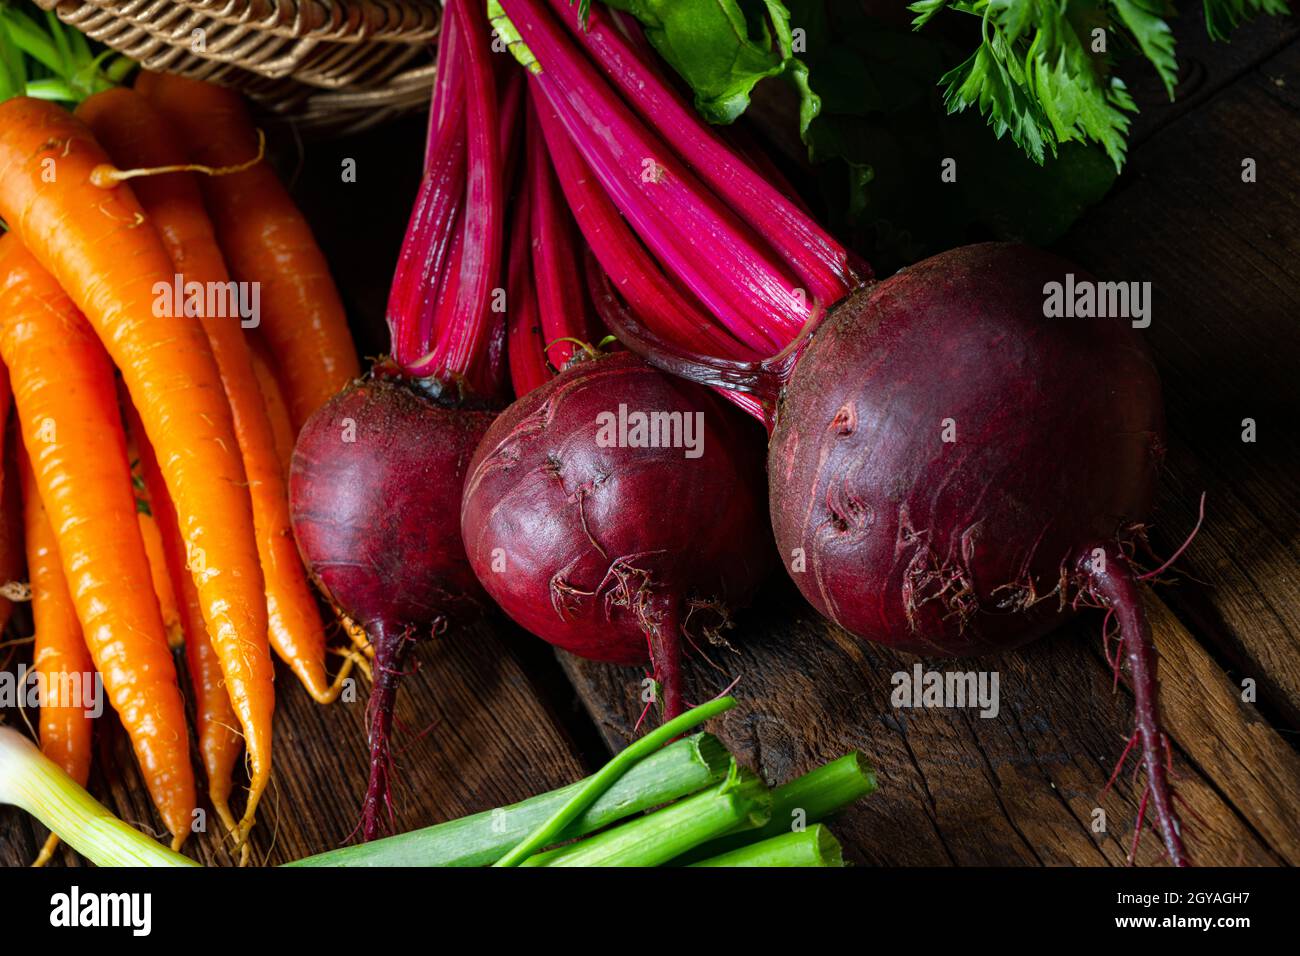 Korb mit verschiedene gemüse: rote beete und karotte Stock Photo - Alamy